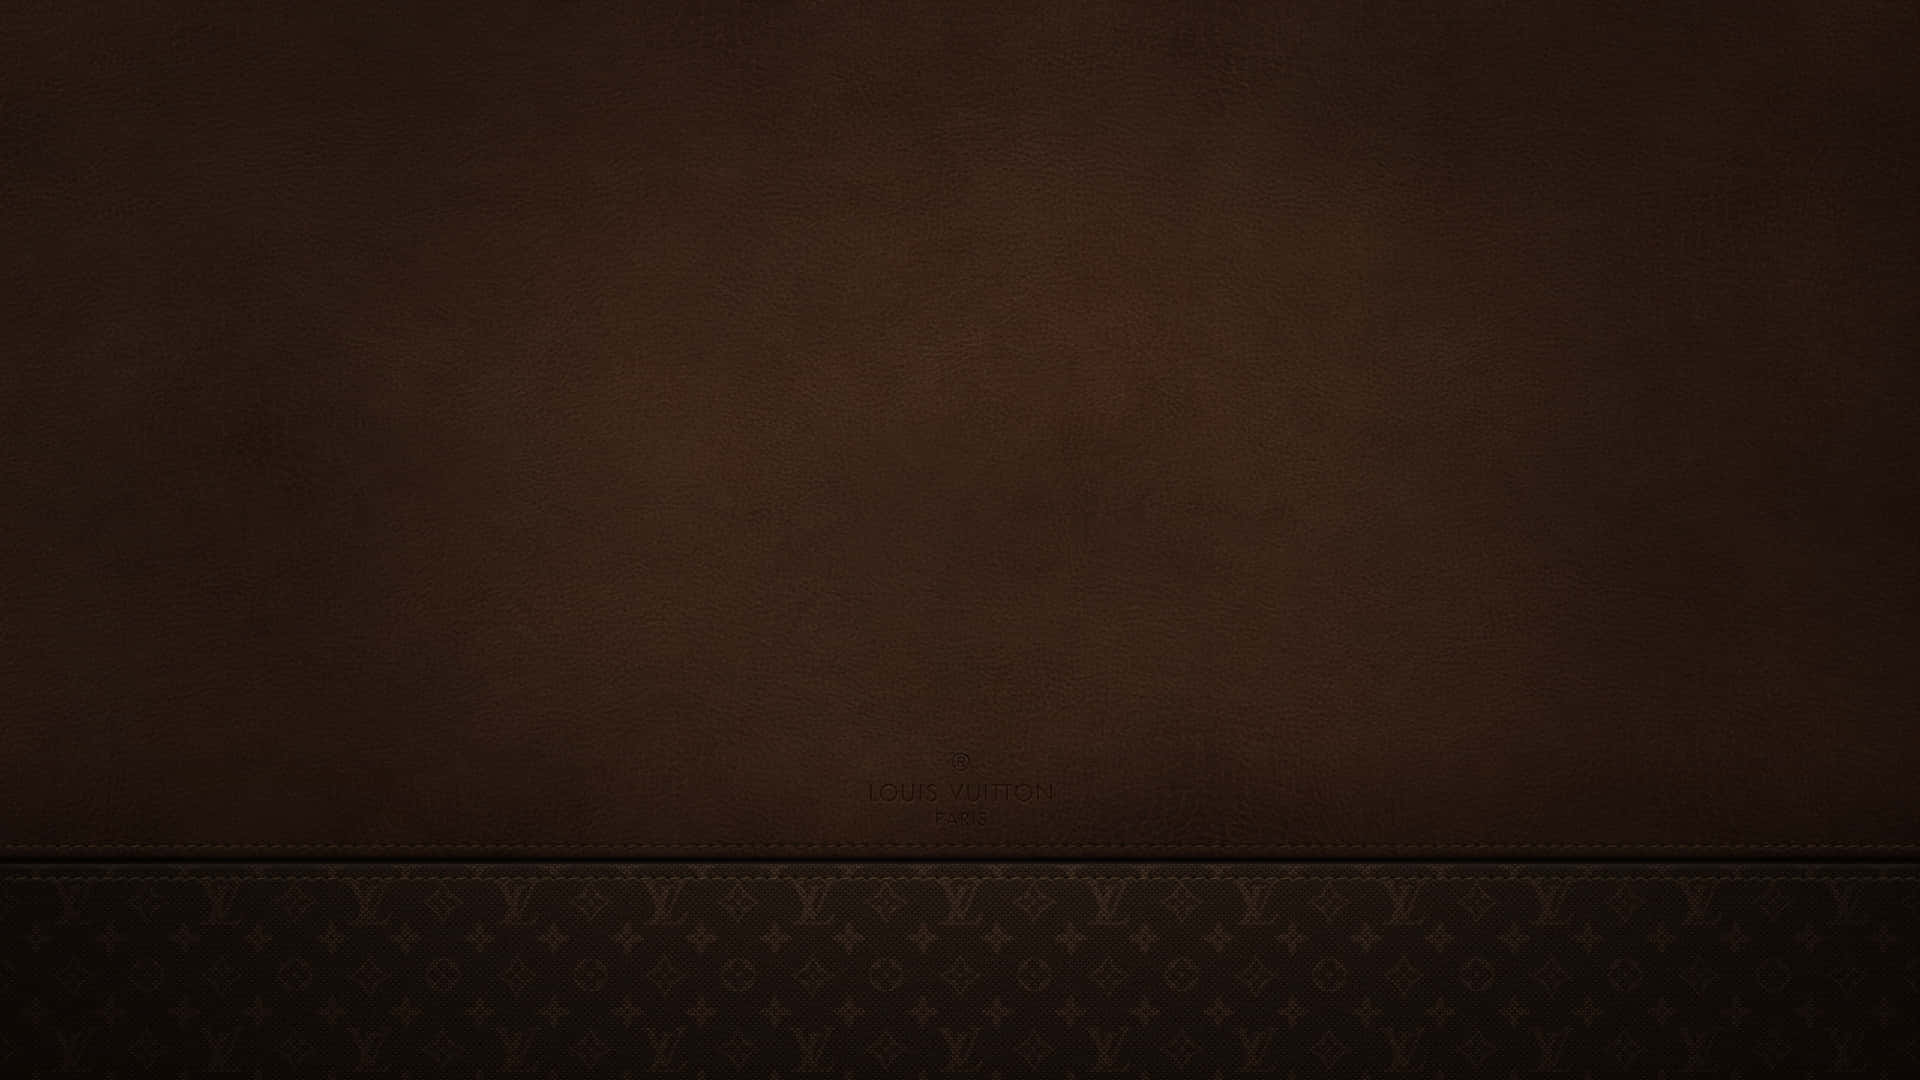 Følluksusen Af Louis Vuitton I Fantastisk 4k Opløsning. Wallpaper